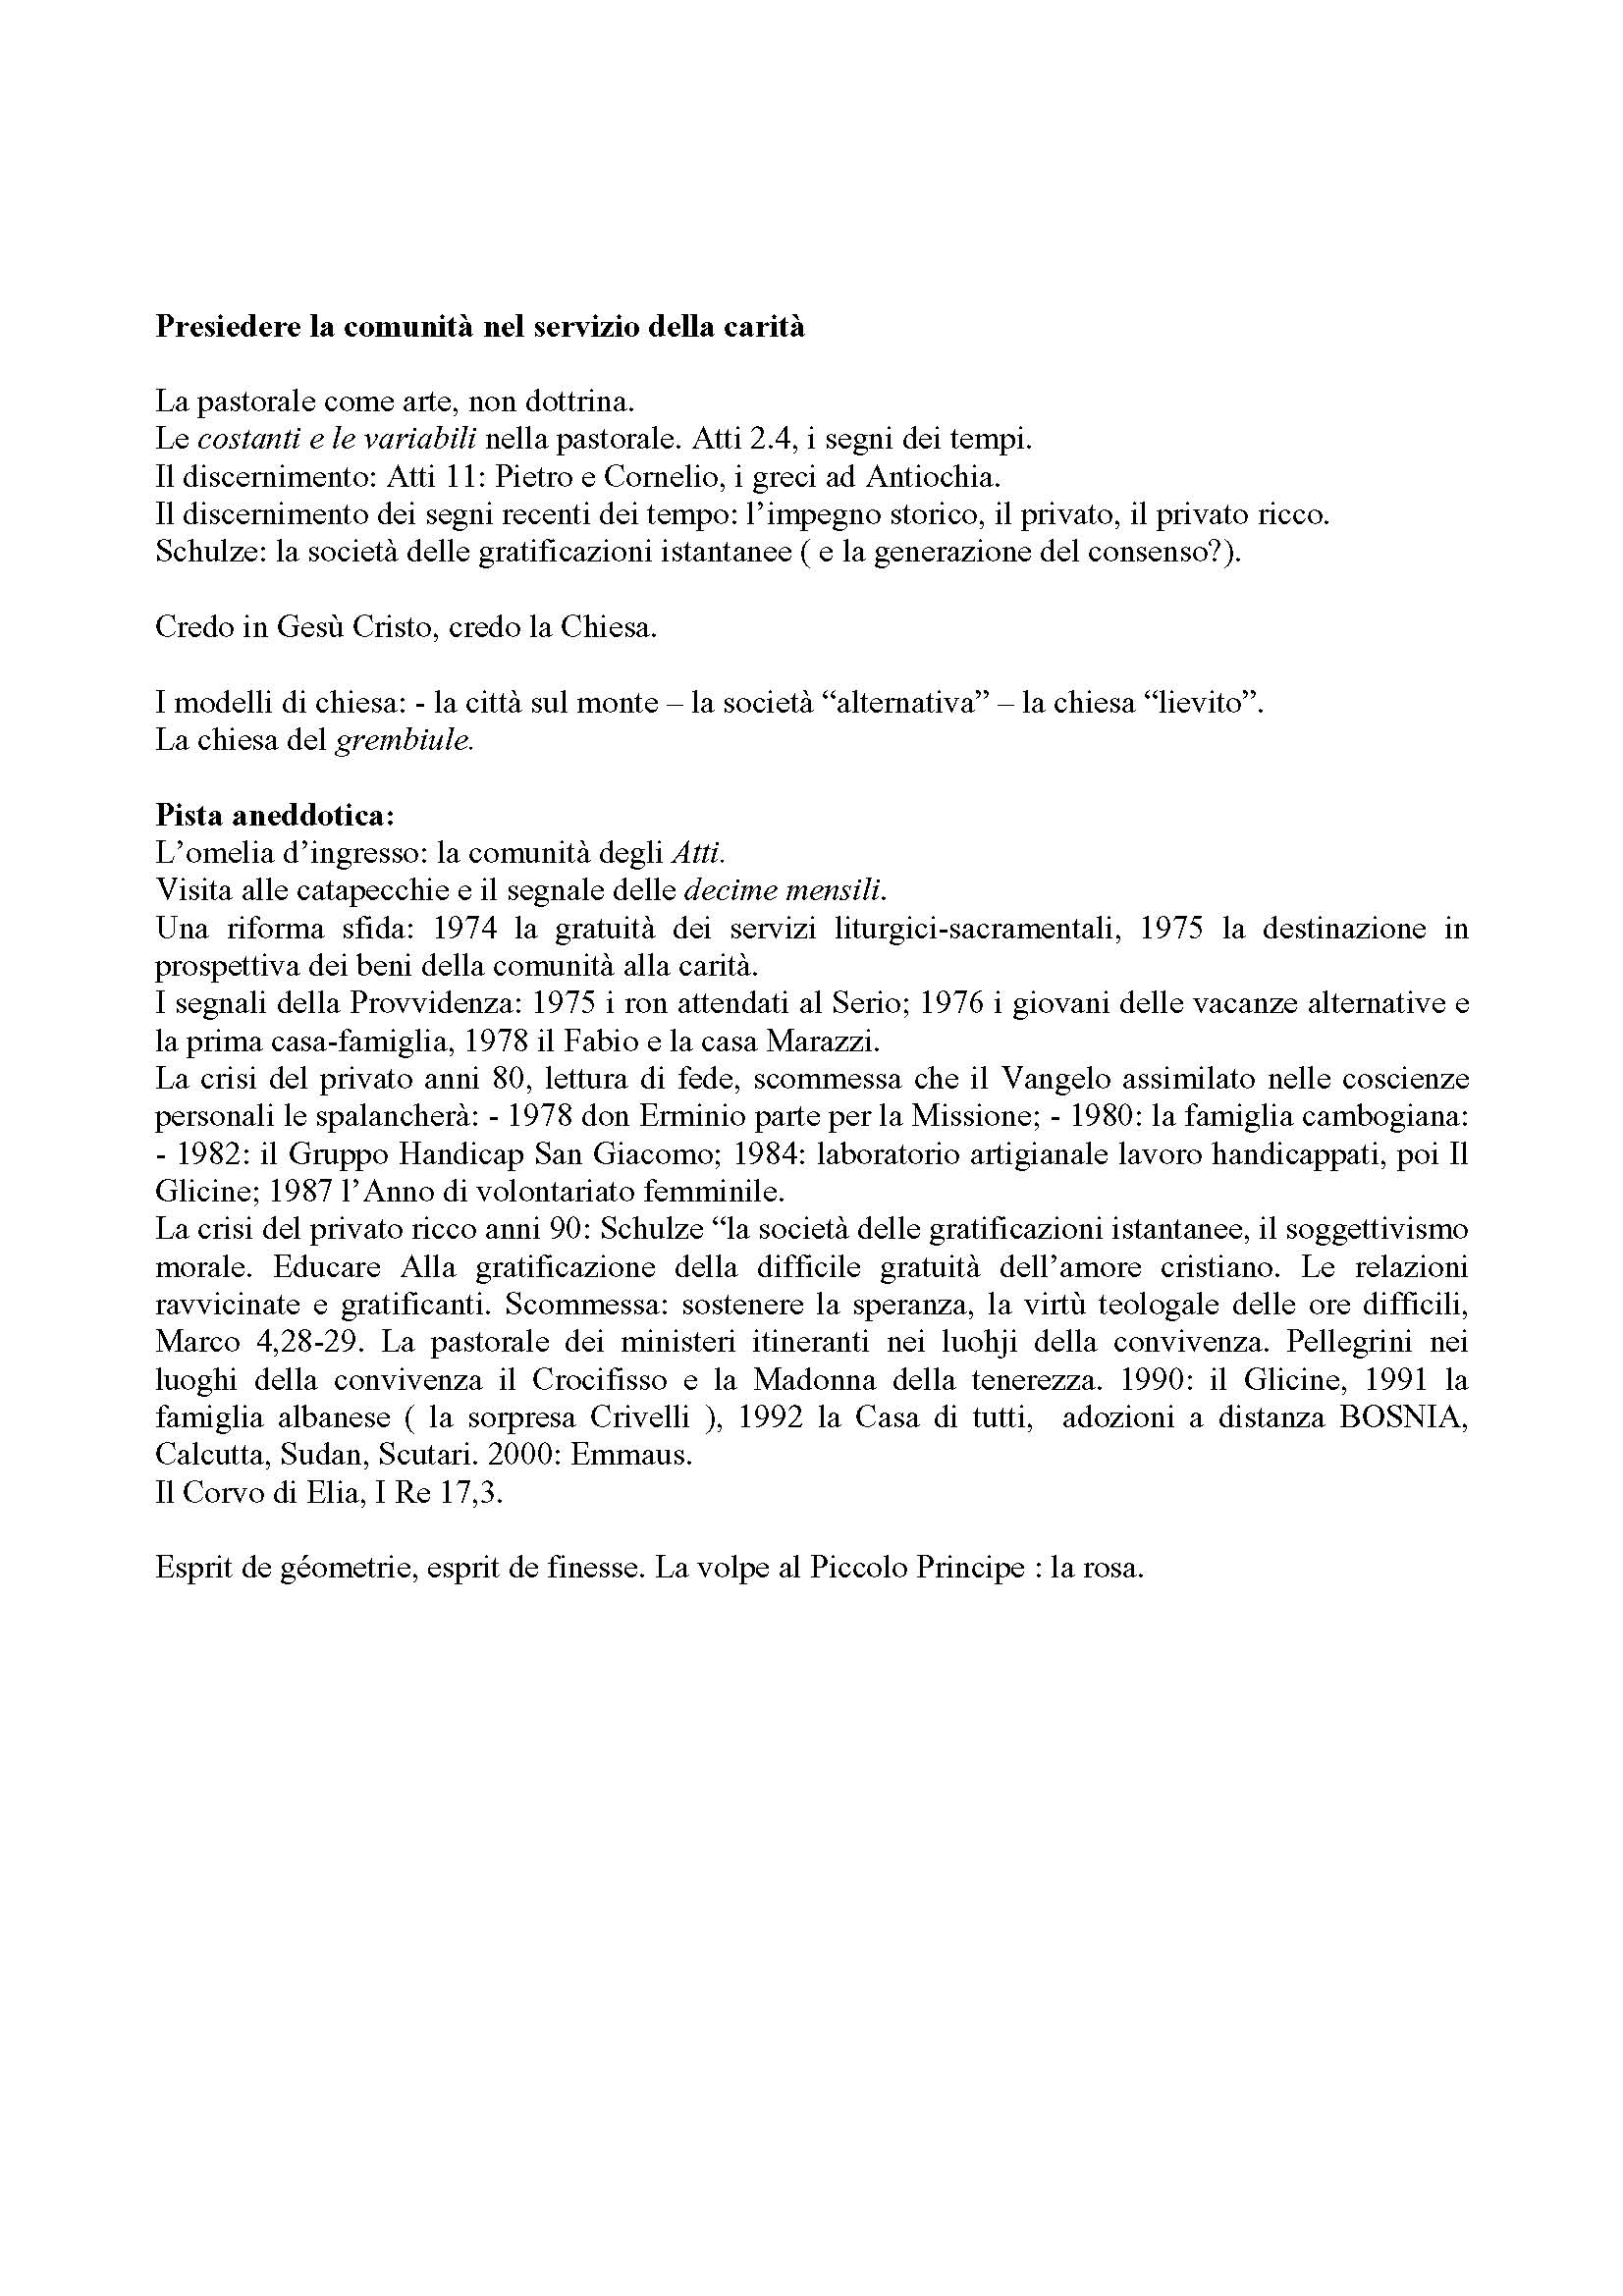 2003_Pregiolodi_Presiedere_la_comunit_nel_servizio_della_carit.pdf